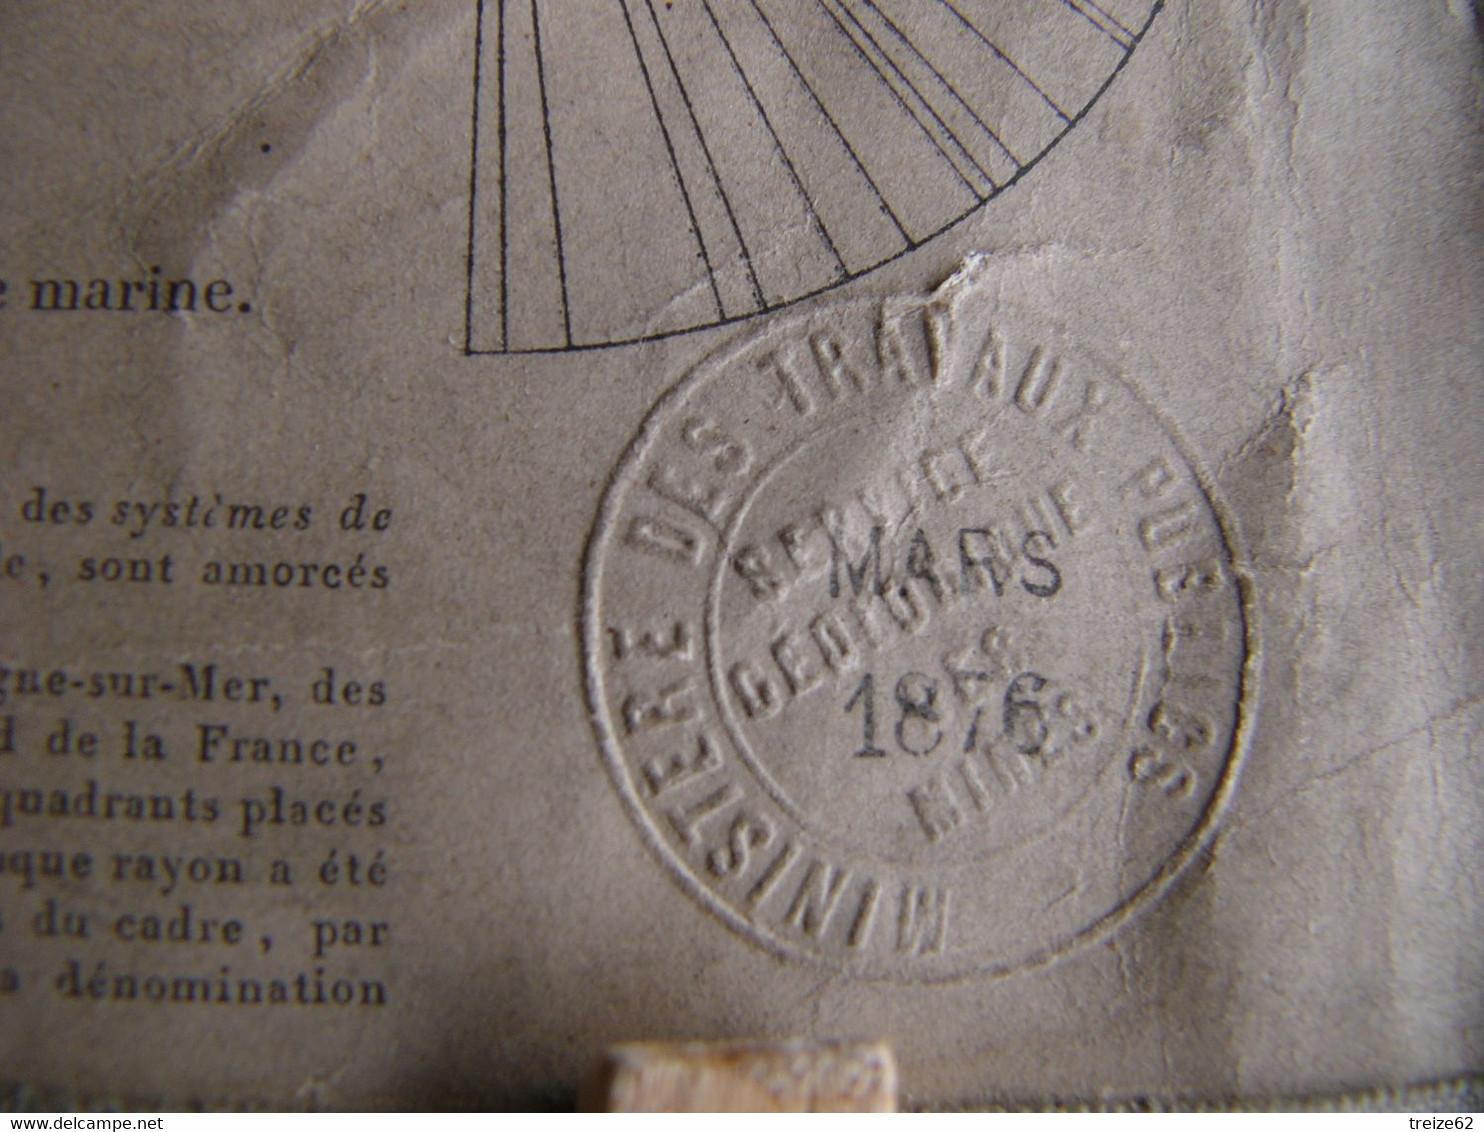 1876 Carte Toilée Montreuil Sur Mer Le Touquet Berck Merlimont Cucq Groffliers Favières Fort Mahon Verton Quend Rue - Topographical Maps